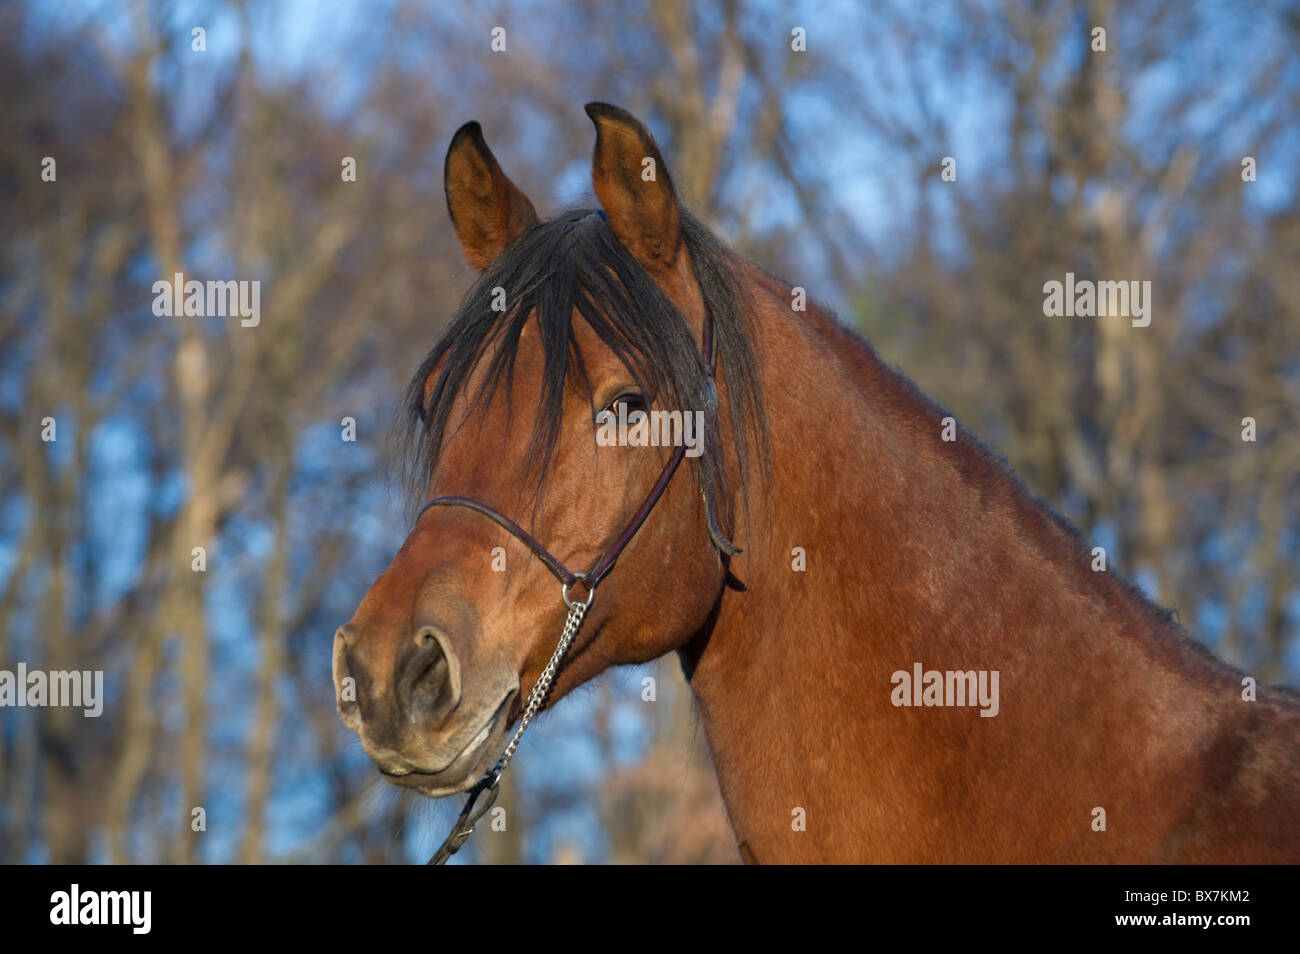 Beau cheval arabe à la fin de soir lumière dorée, tête de jument baie de race en manteau d'hiver. Banque D'Images